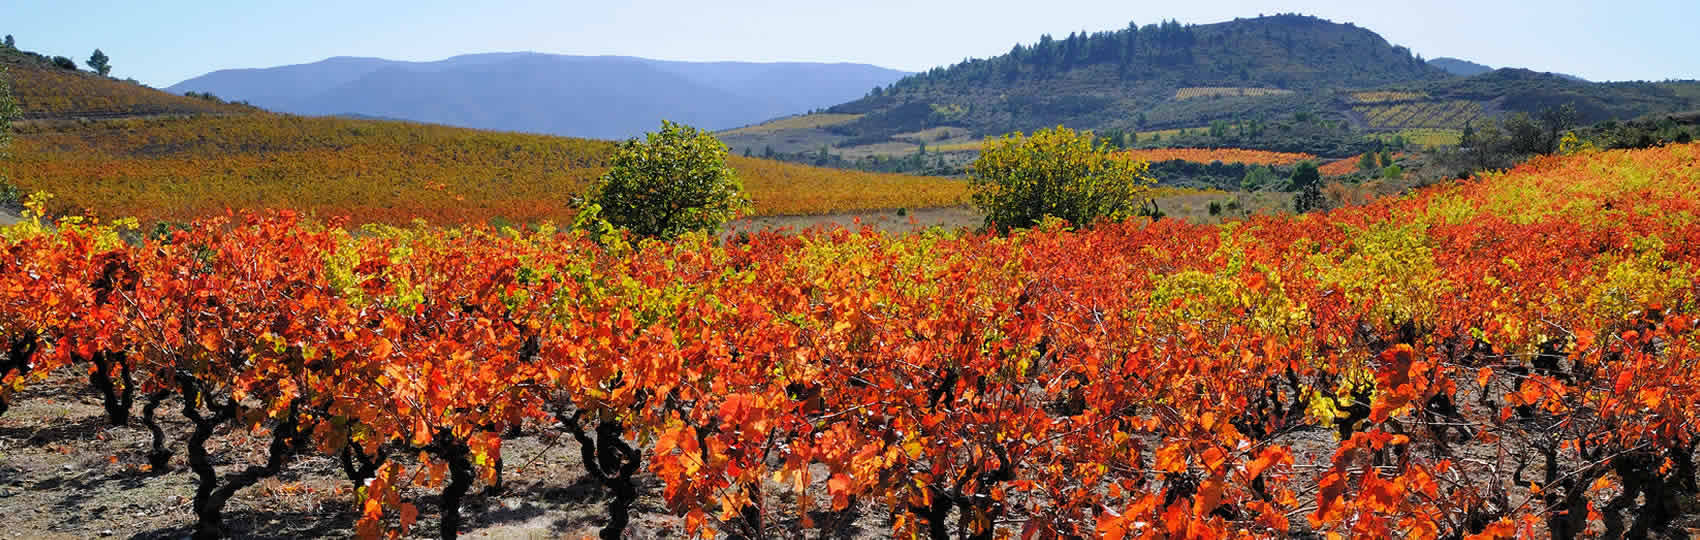 séjours destination vignoble en Languedoc Roussillon Aude pays cathare